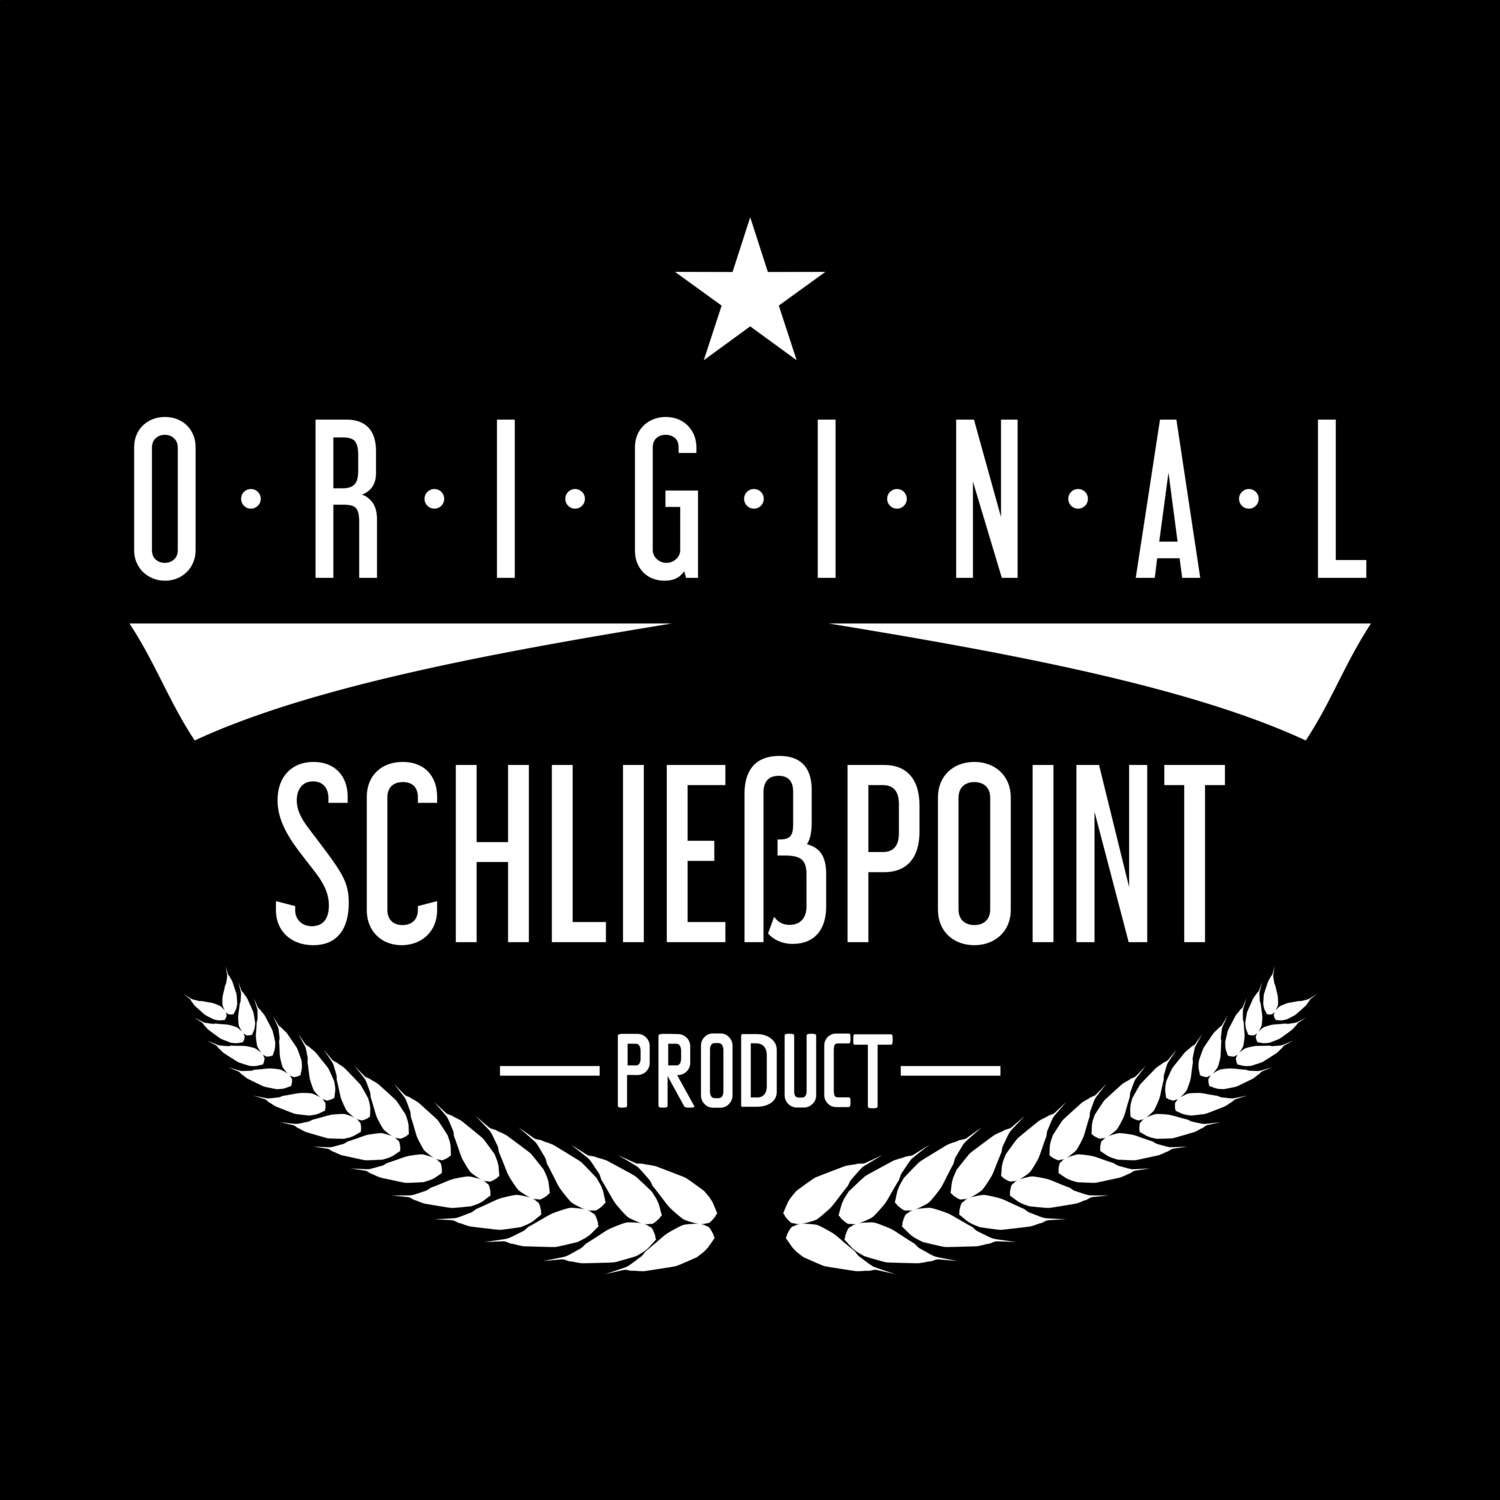 Schließpoint T-Shirt »Original Product«